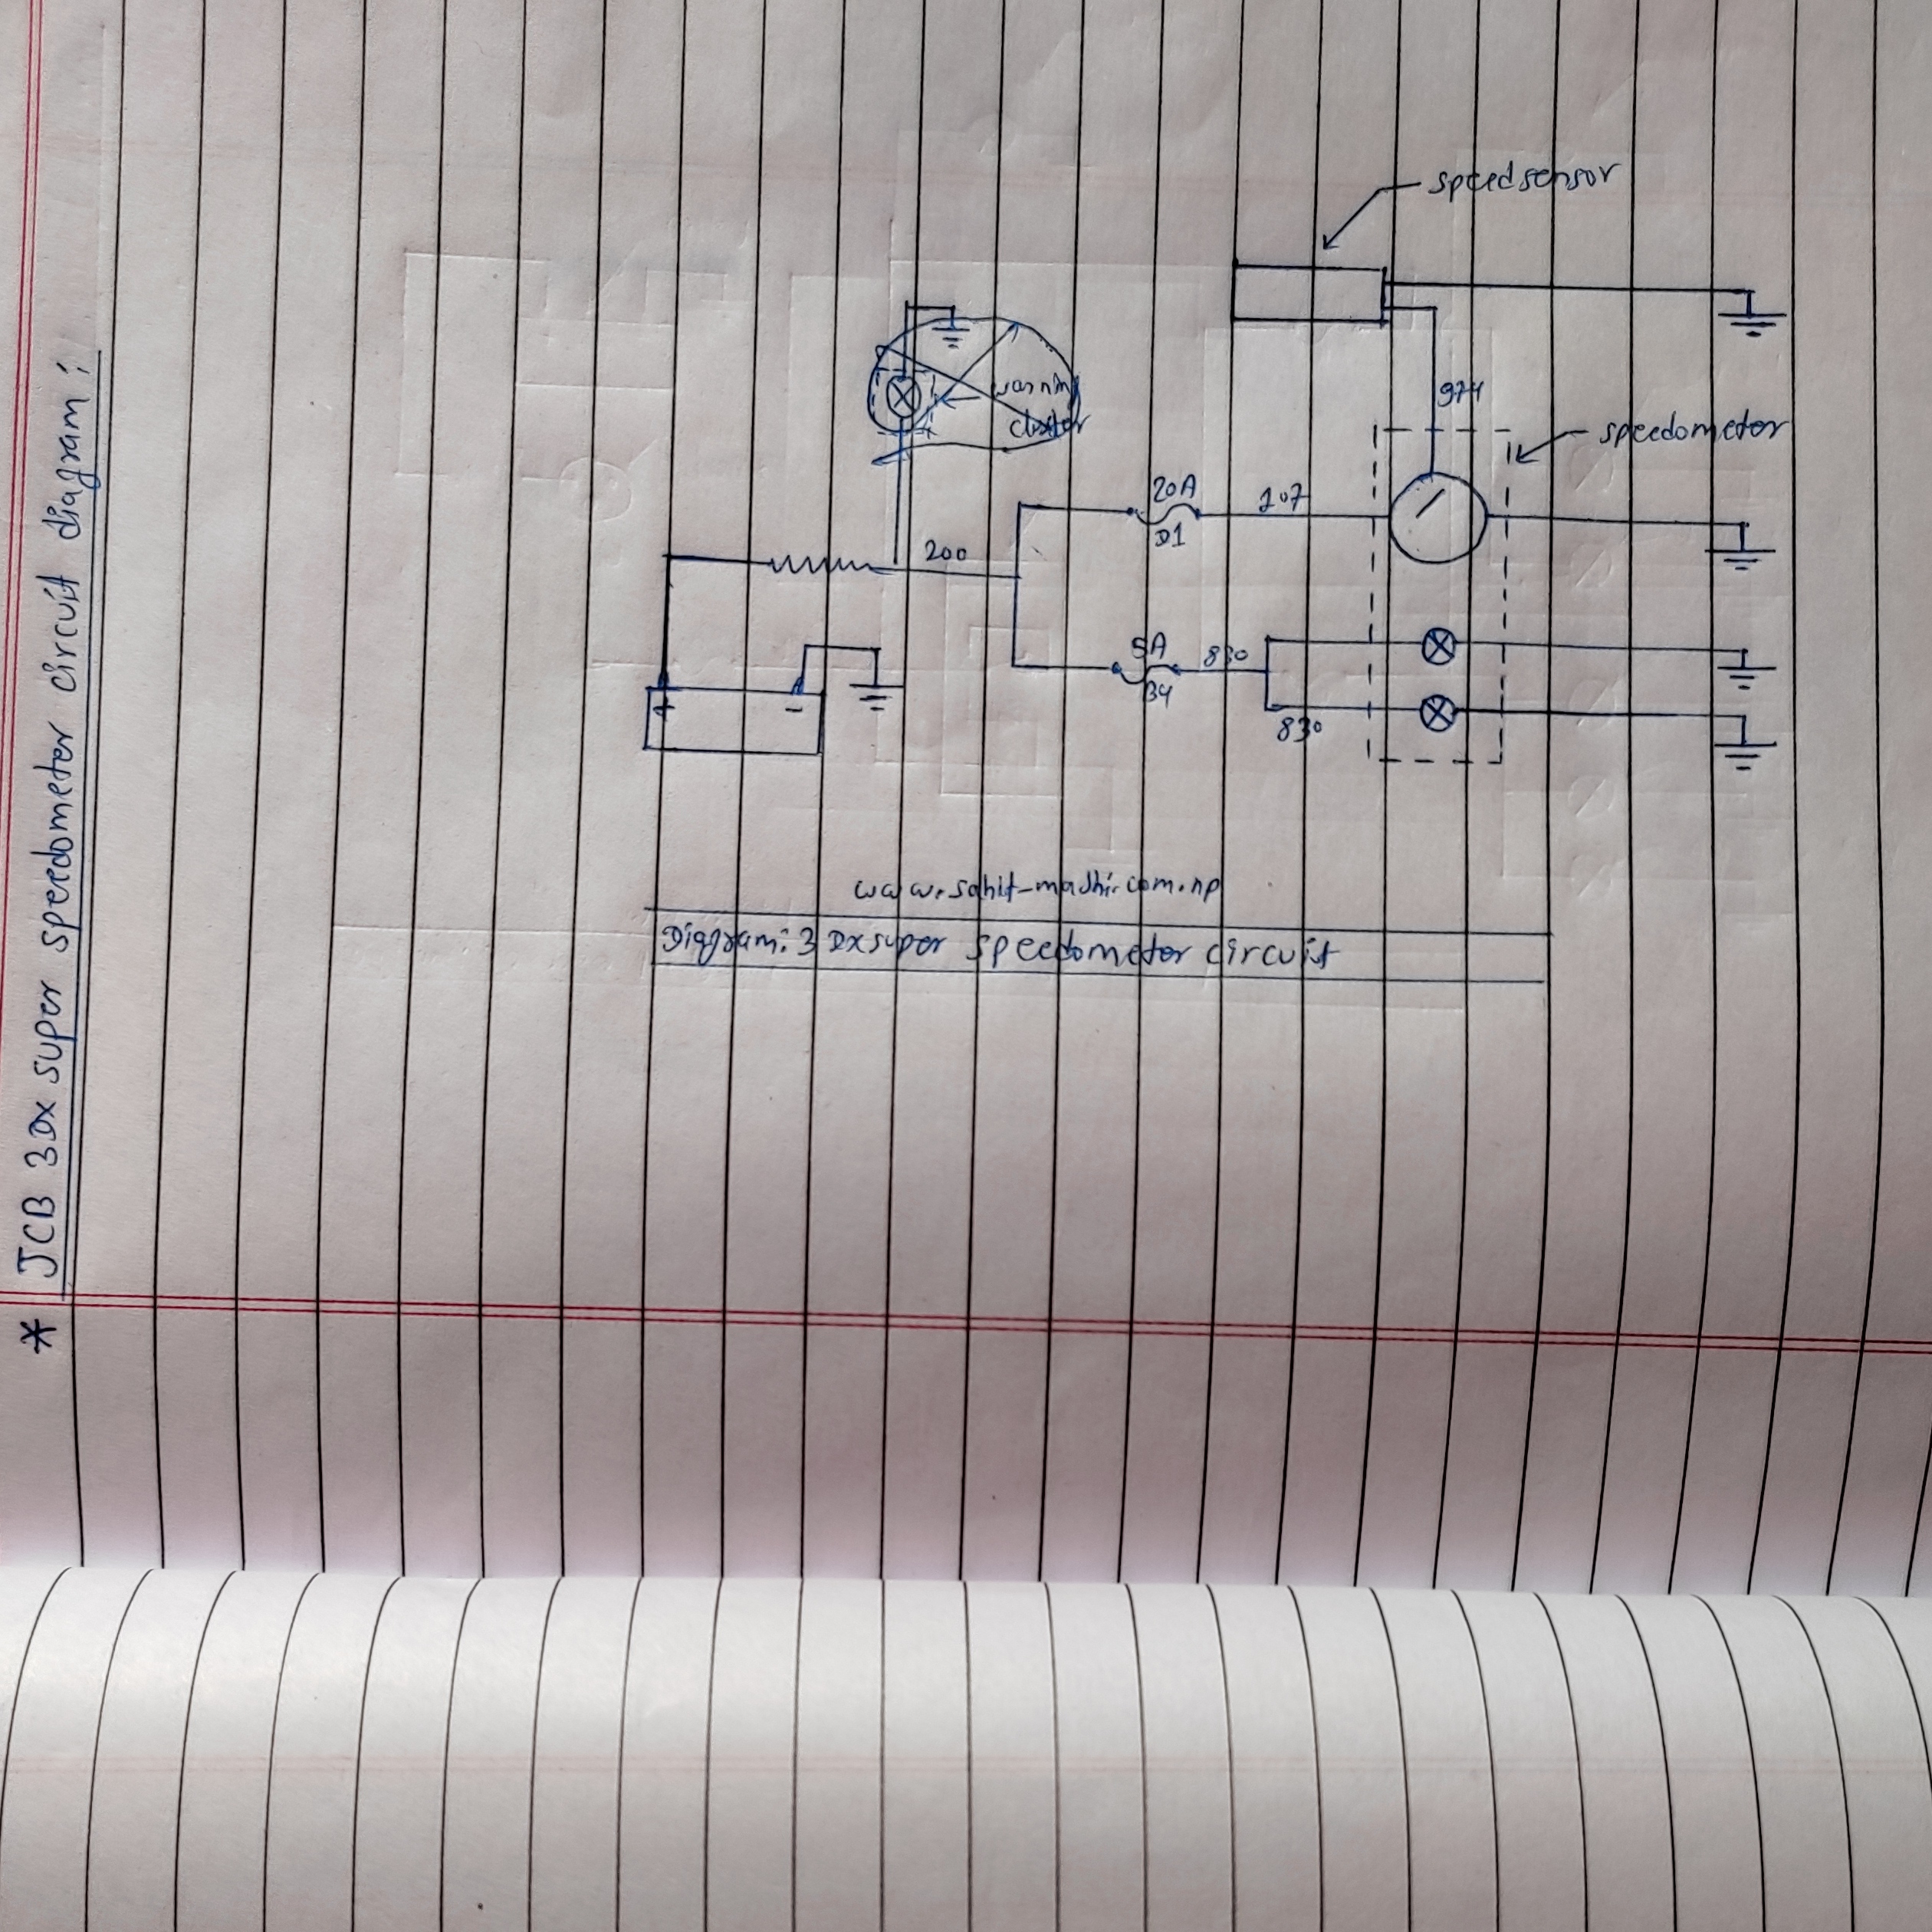 jcb 3dx super Speedometer circuit diagram